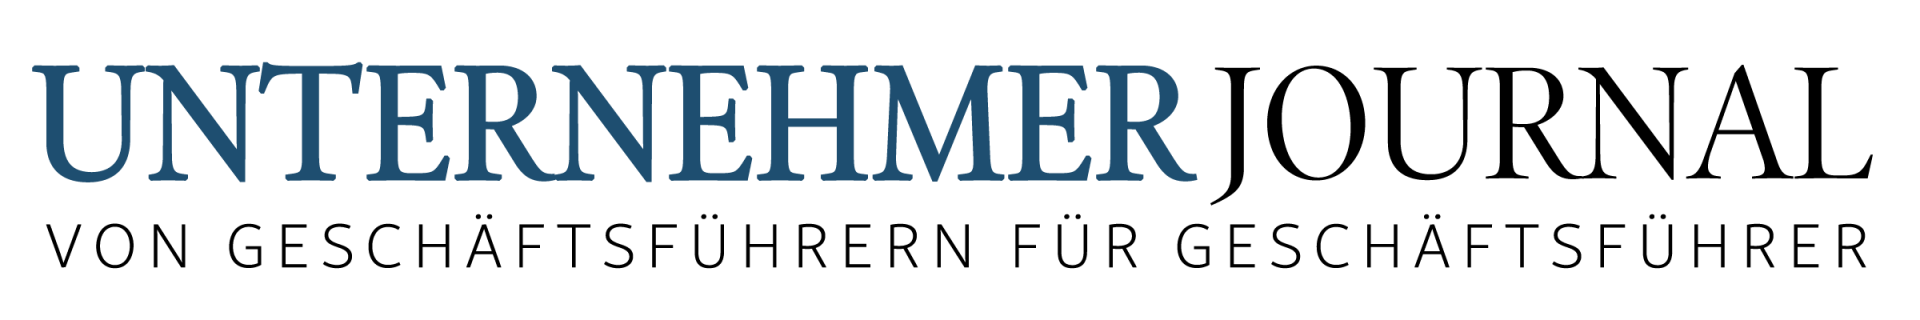 Unternehmerjournal_Logo